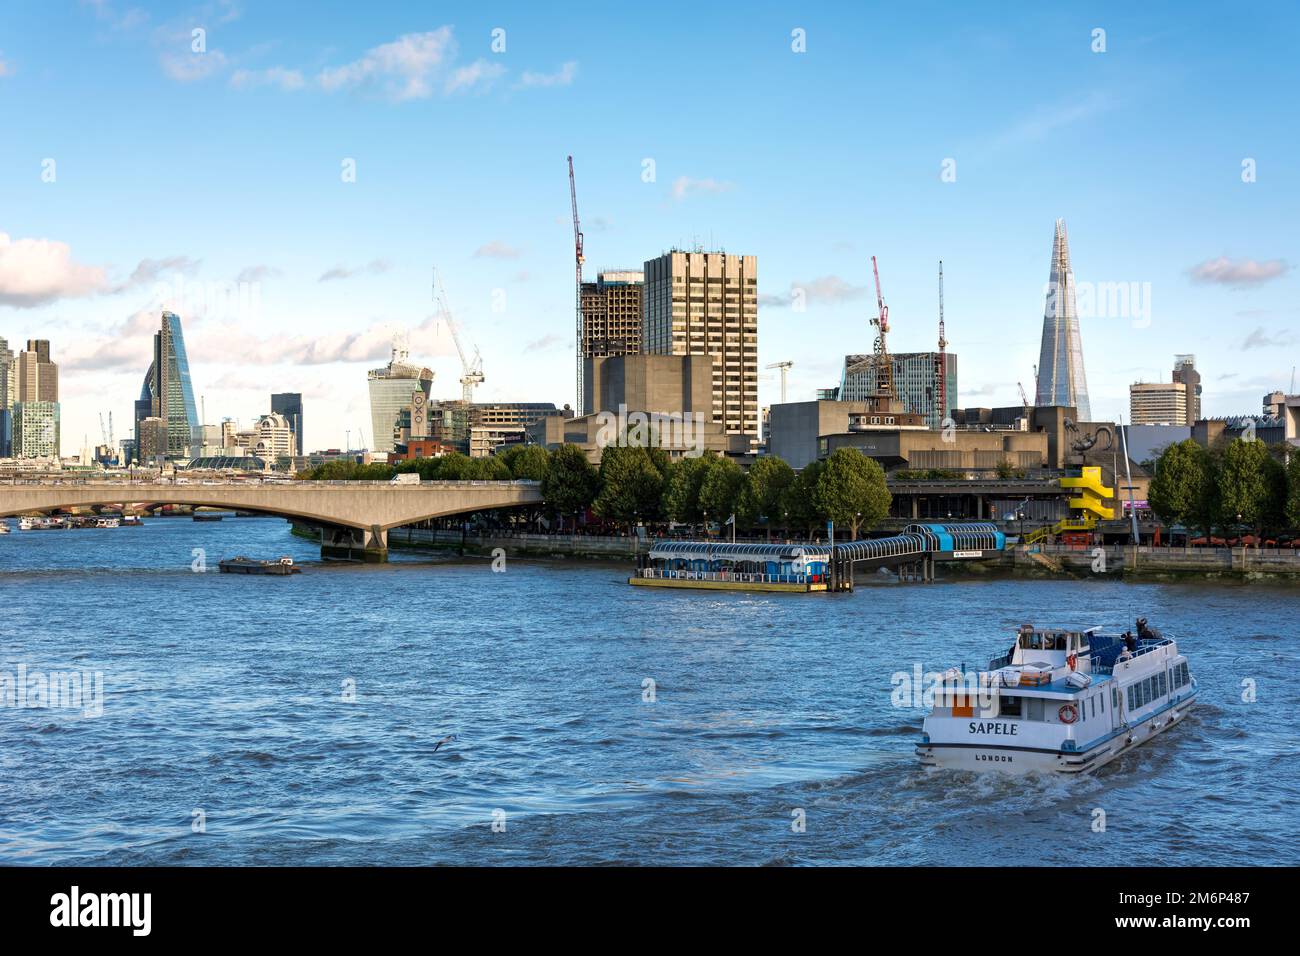 LONDON - NOVEMBER 3 : Blick auf die Themse in London am 3. November 2013. Nicht identifizierte Personen Stockfoto